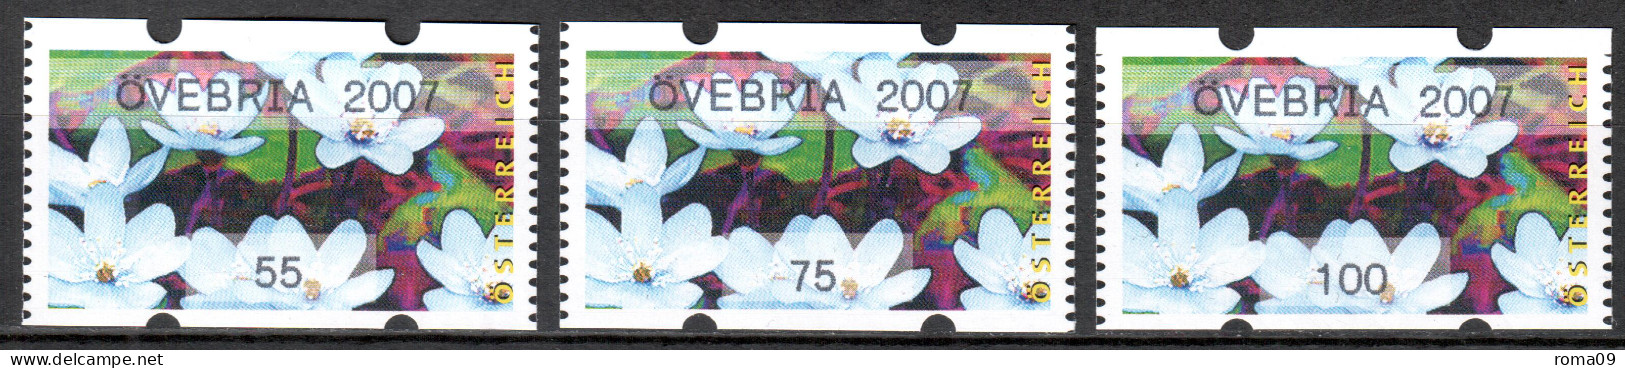 MiNr. 3x (55, 75, 100) ATM 6 G, Eindruck: „ÖVEBRIA 2007“; Postfrisch (**) - Vignette [ATM]